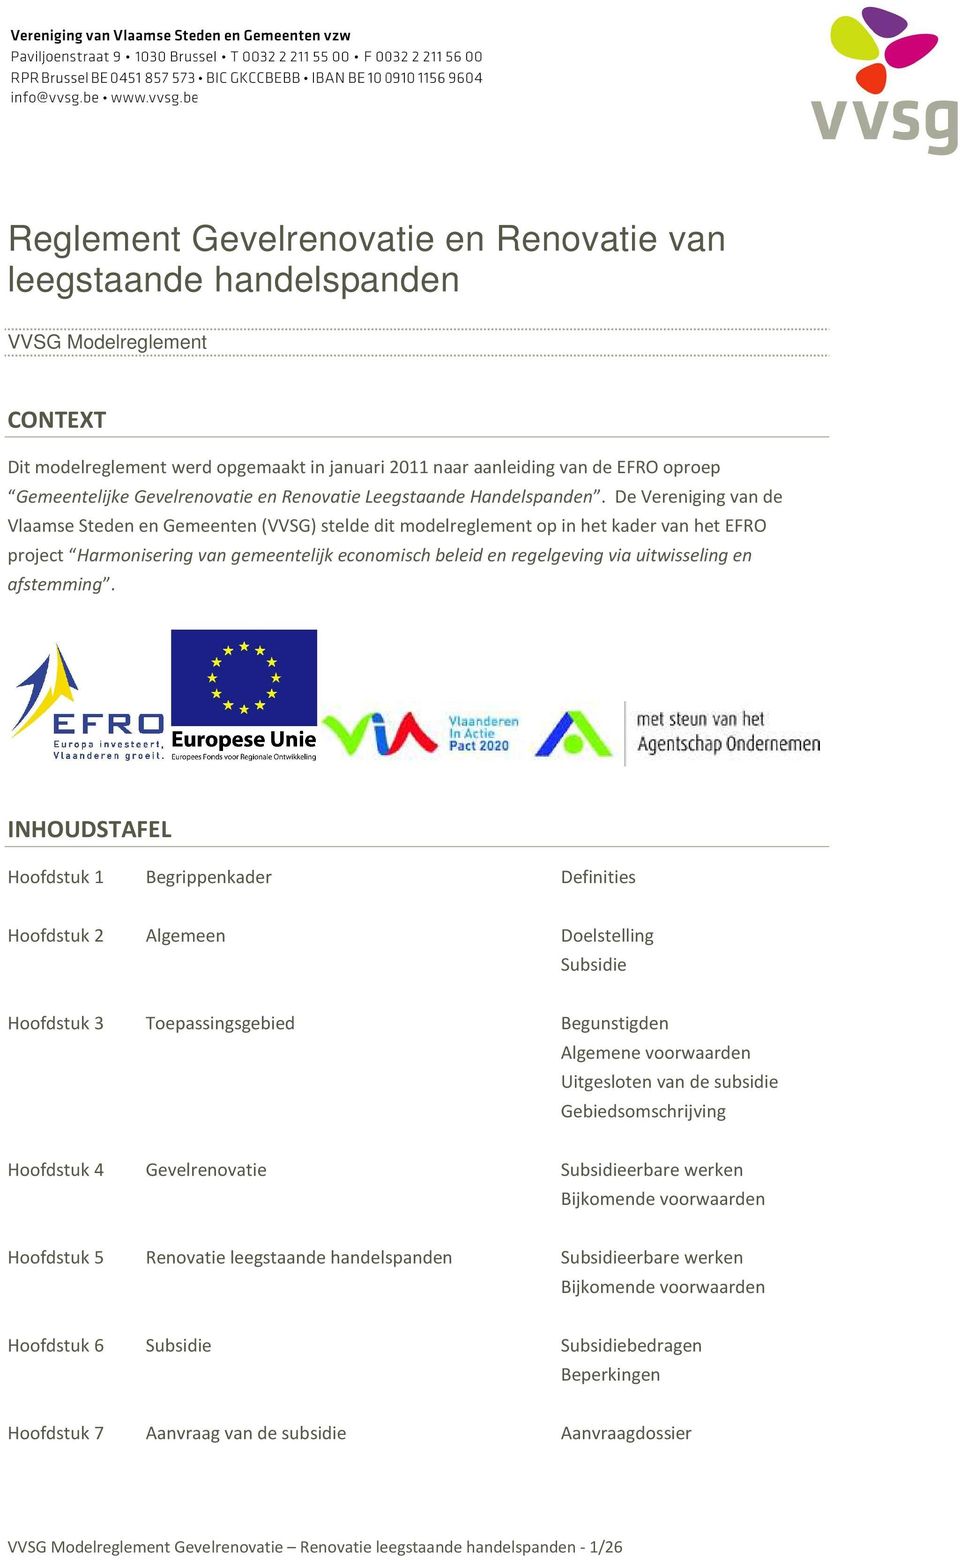 De Vereniging van de Vlaamse Steden en Gemeenten (VVSG) stelde dit modelreglement op in het kader van het EFRO project Harmonisering van gemeentelijk economisch beleid en regelgeving via uitwisseling